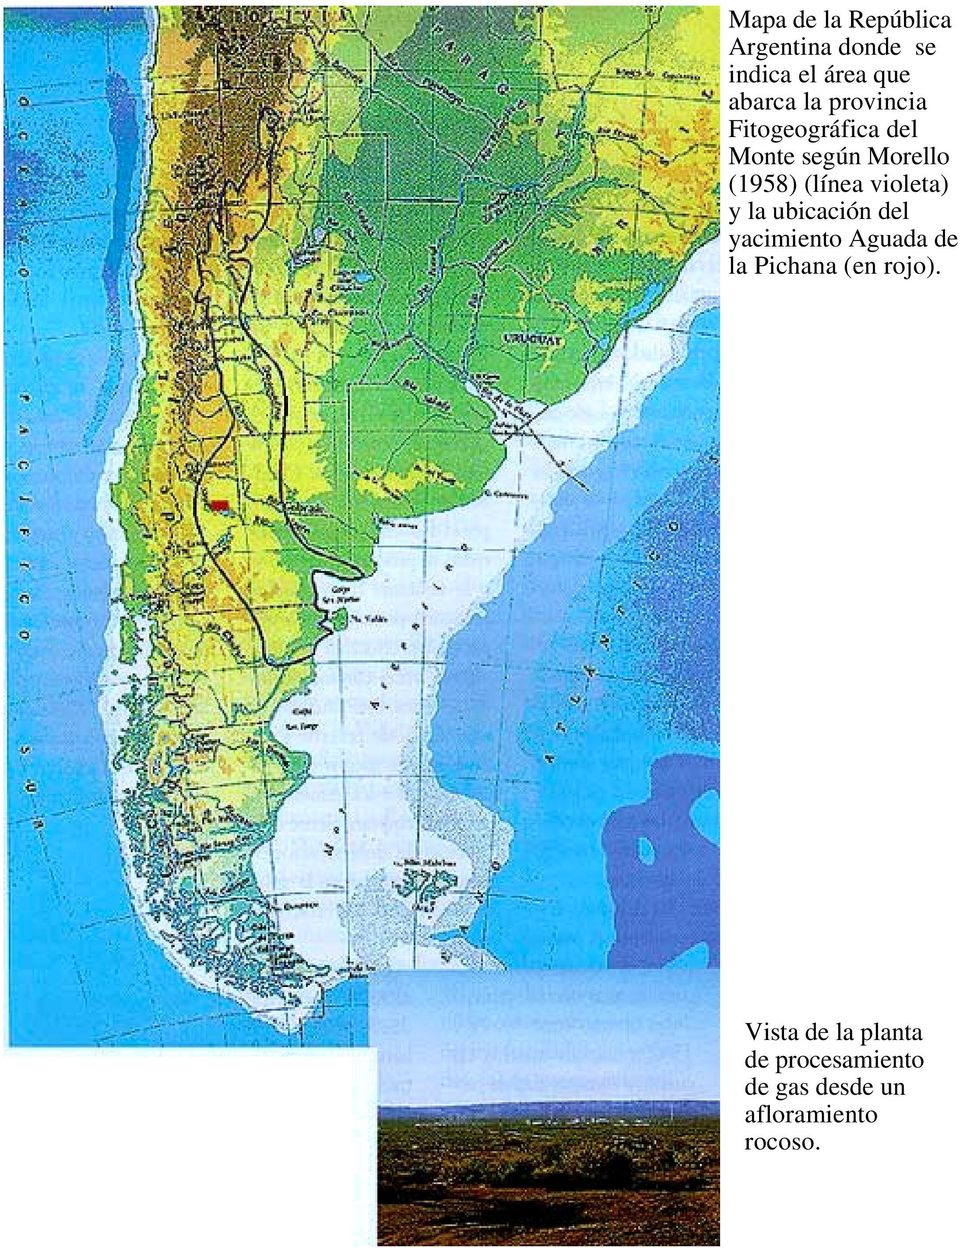 violeta) y la ubicación del yacimiento Aguada de la Pichana (en